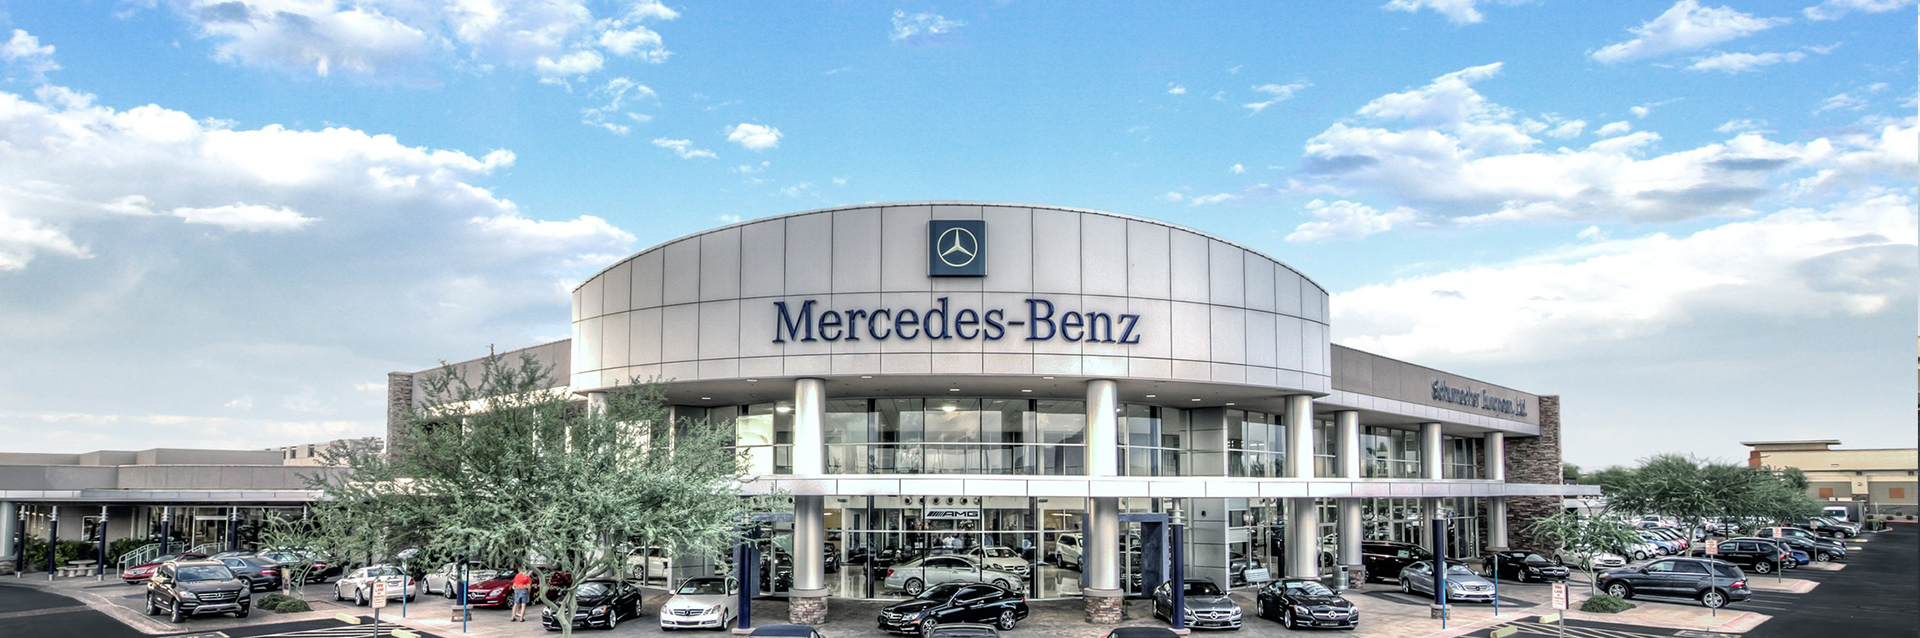 mercedes-benz-dealership-signage